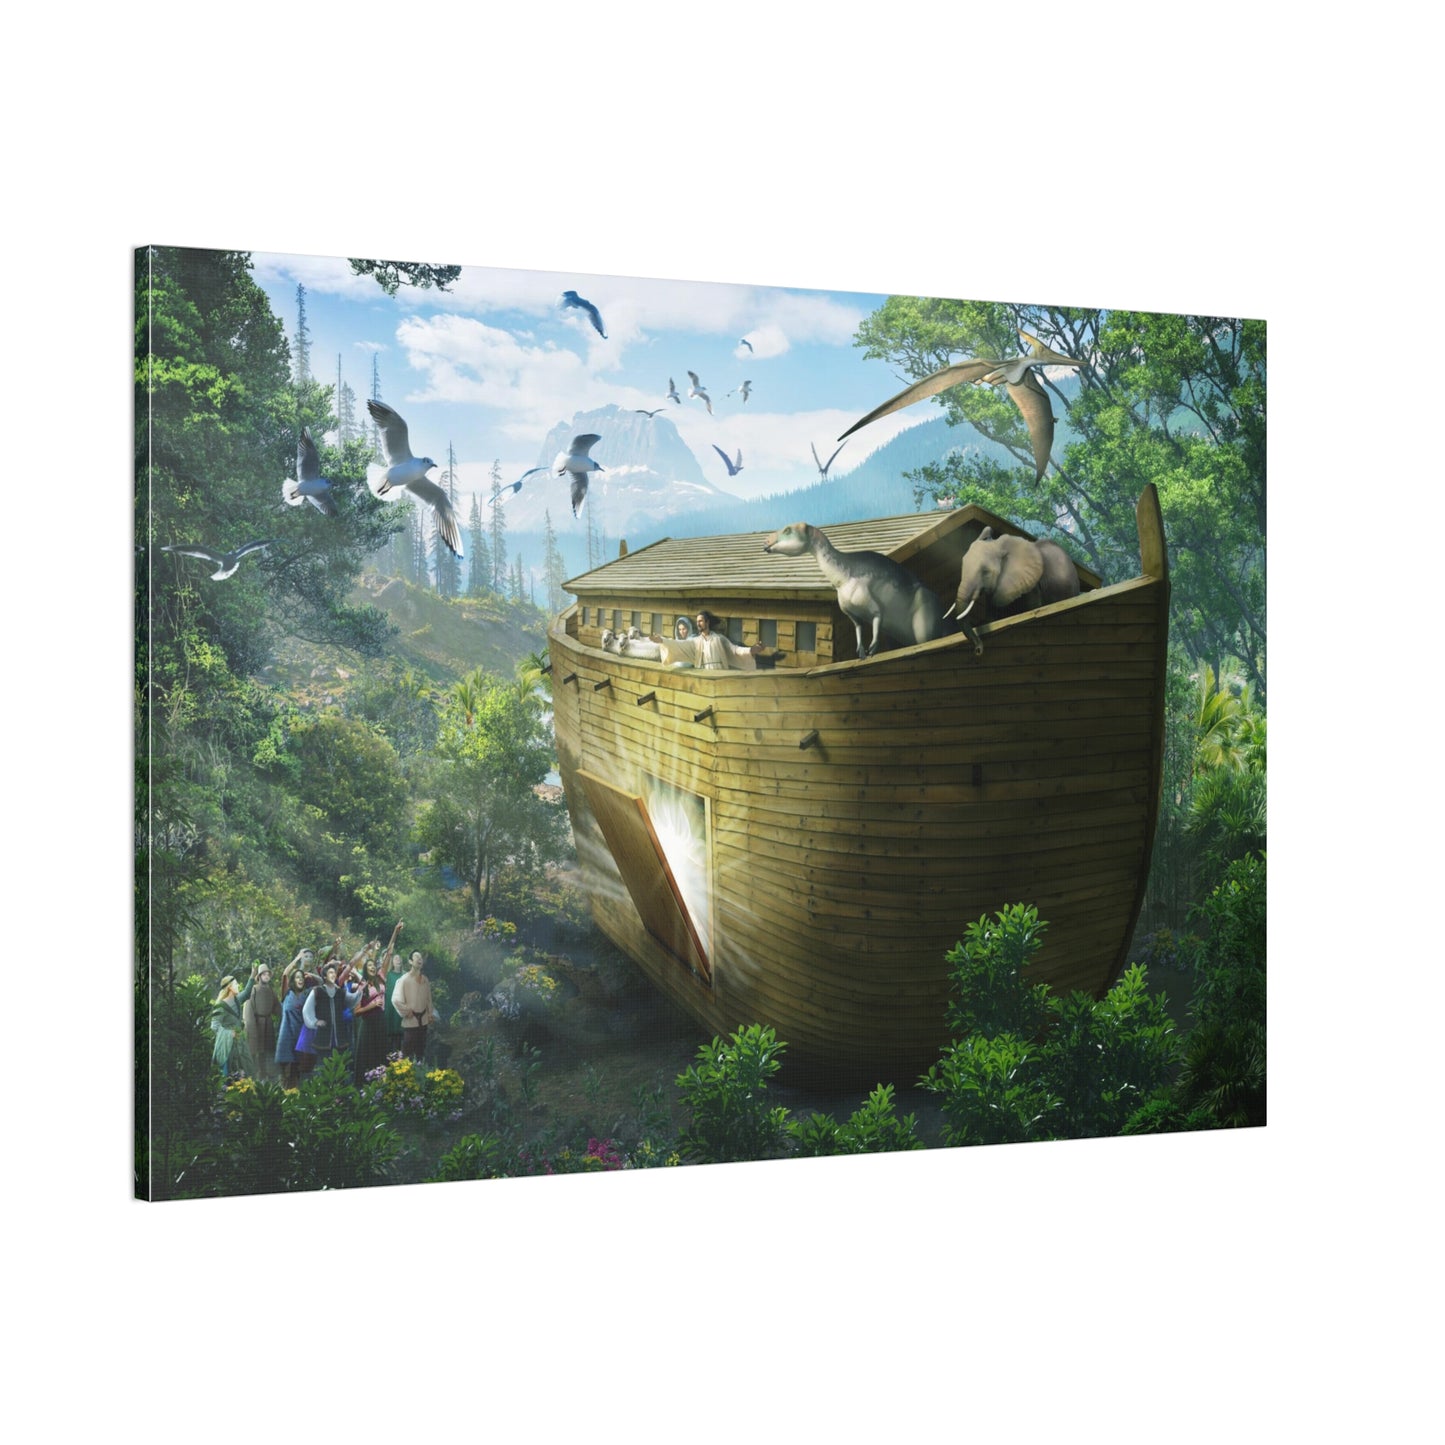 Noah's Ark - Genesis 7:16